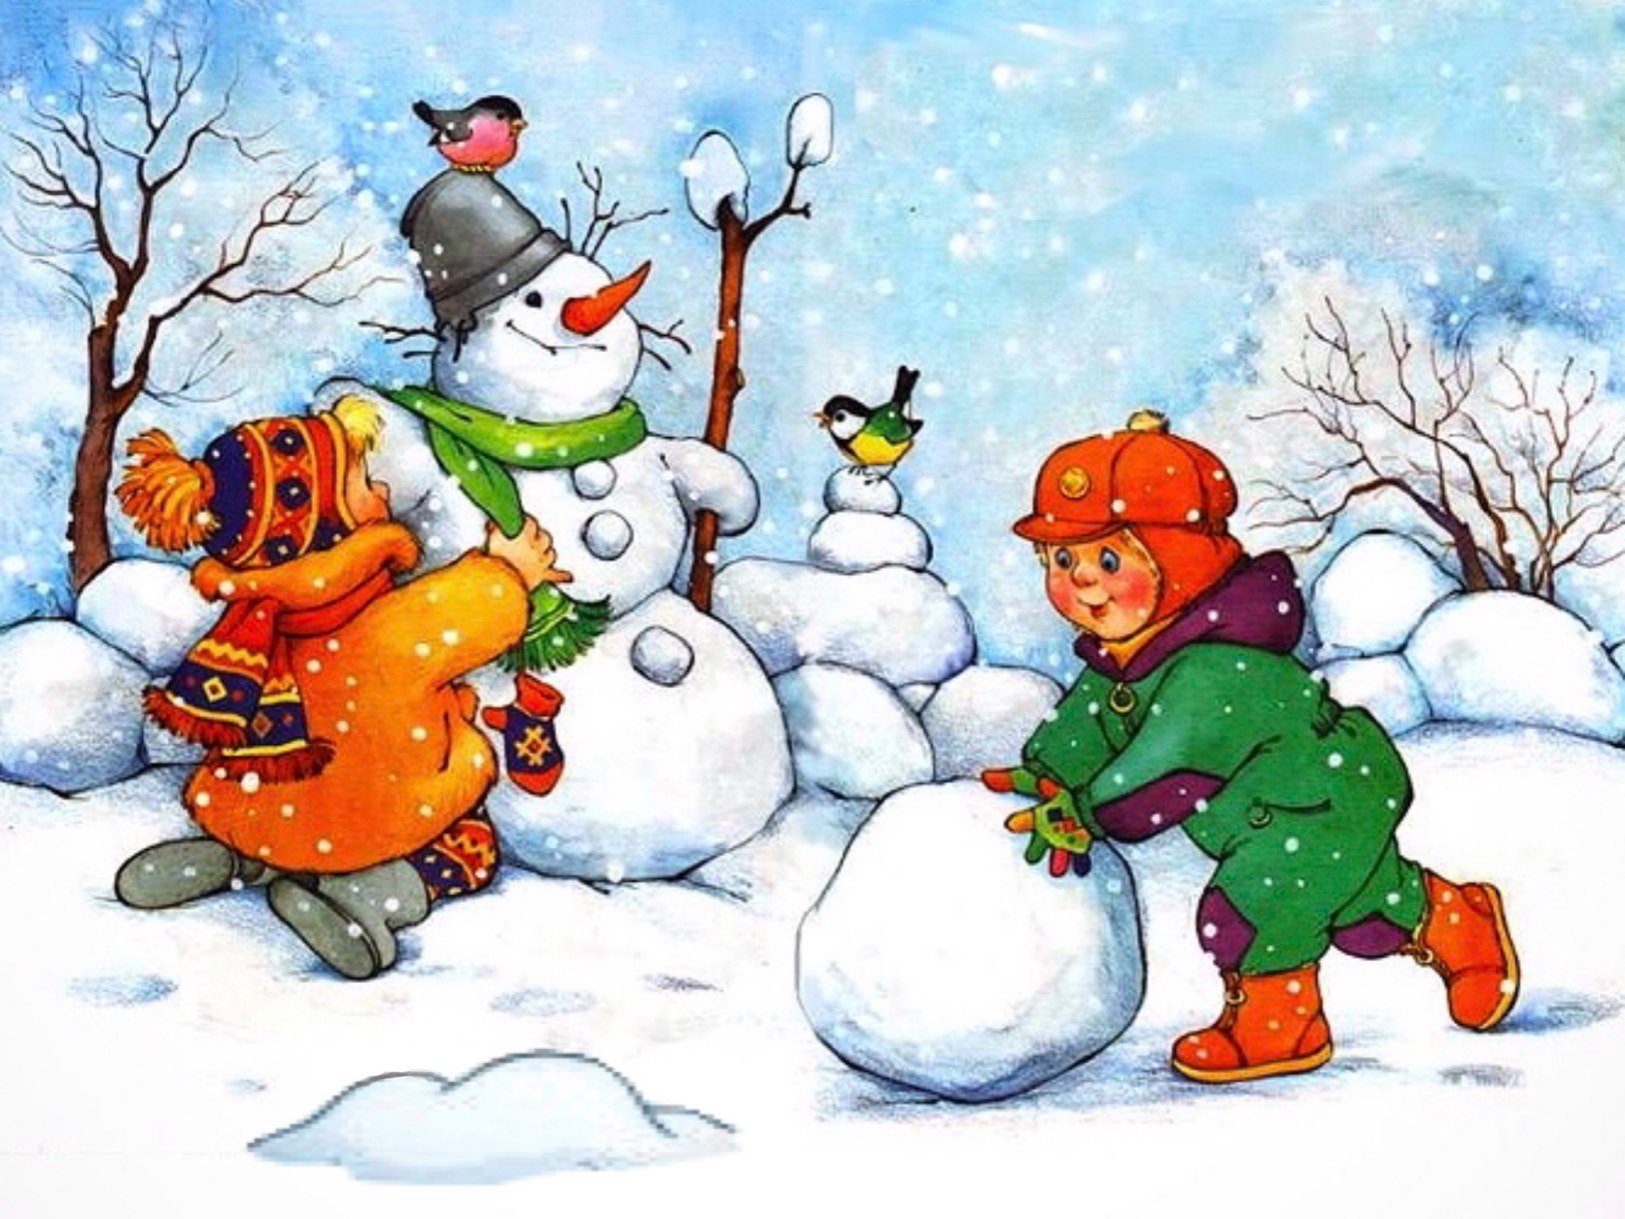 Картинка зимы для детей в детском саду. Зима для дошкольников. Зимние забавы. Дети лепят снеговика. Зима для детей в детском саду.